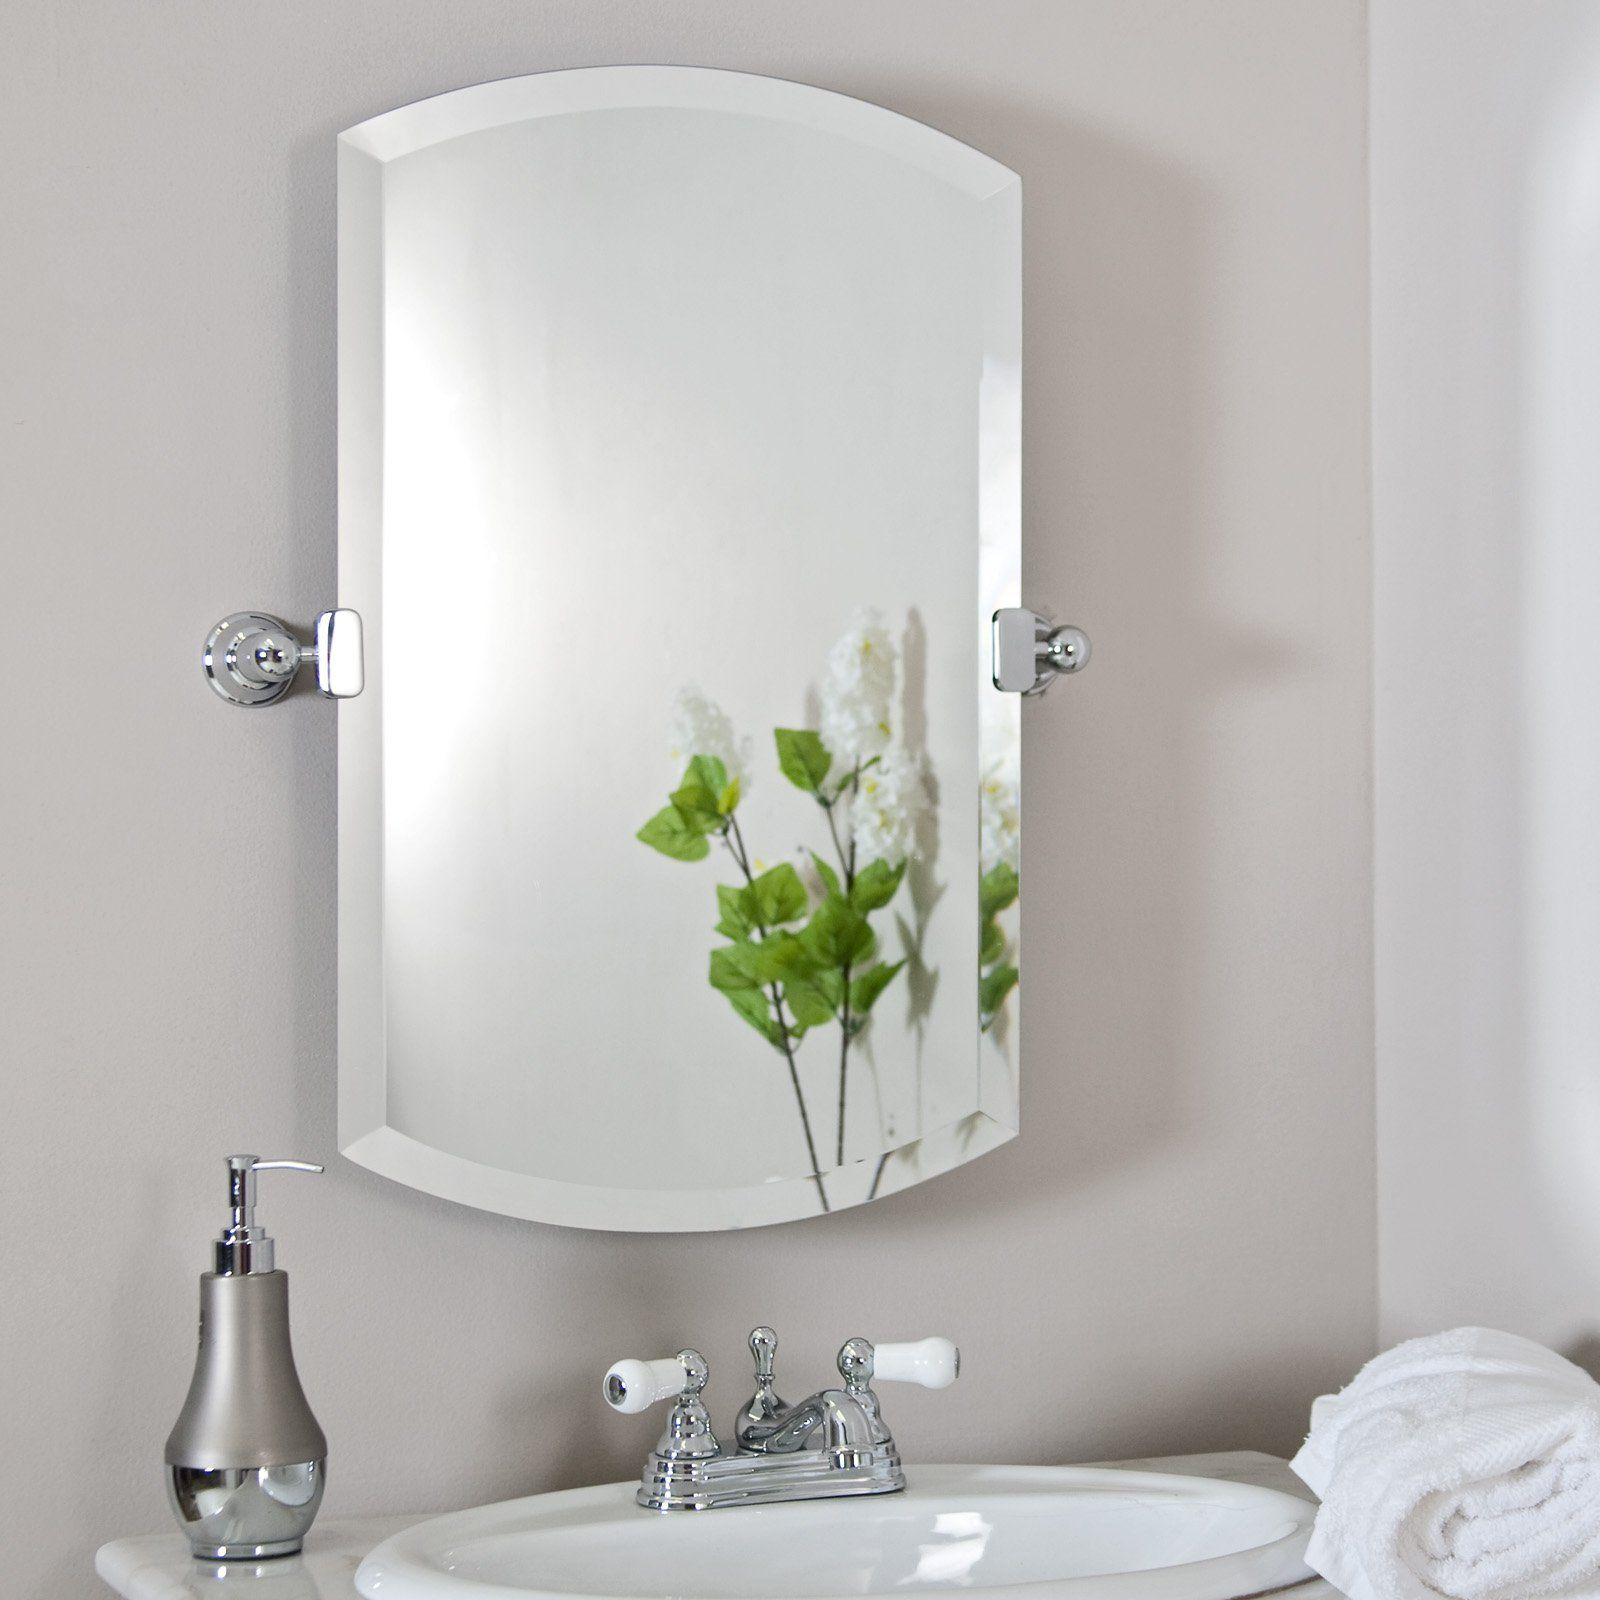 Tilt Mirrors For Bathroom • Bathtub Ideas